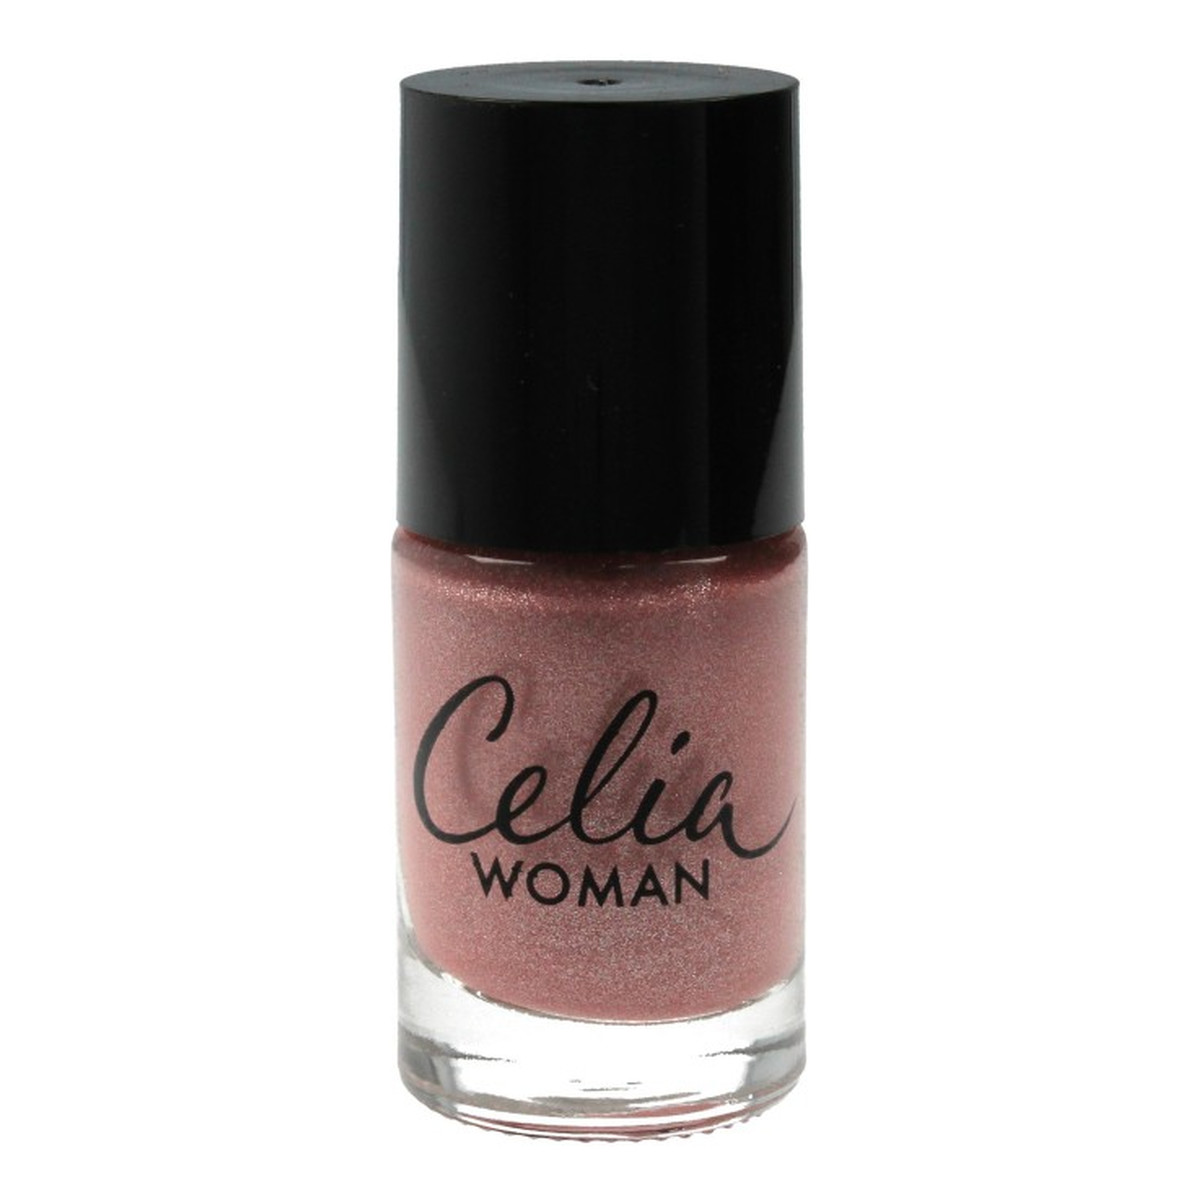 Celia Woman lakier do paznokci winylowy perłowy (205) 10ml